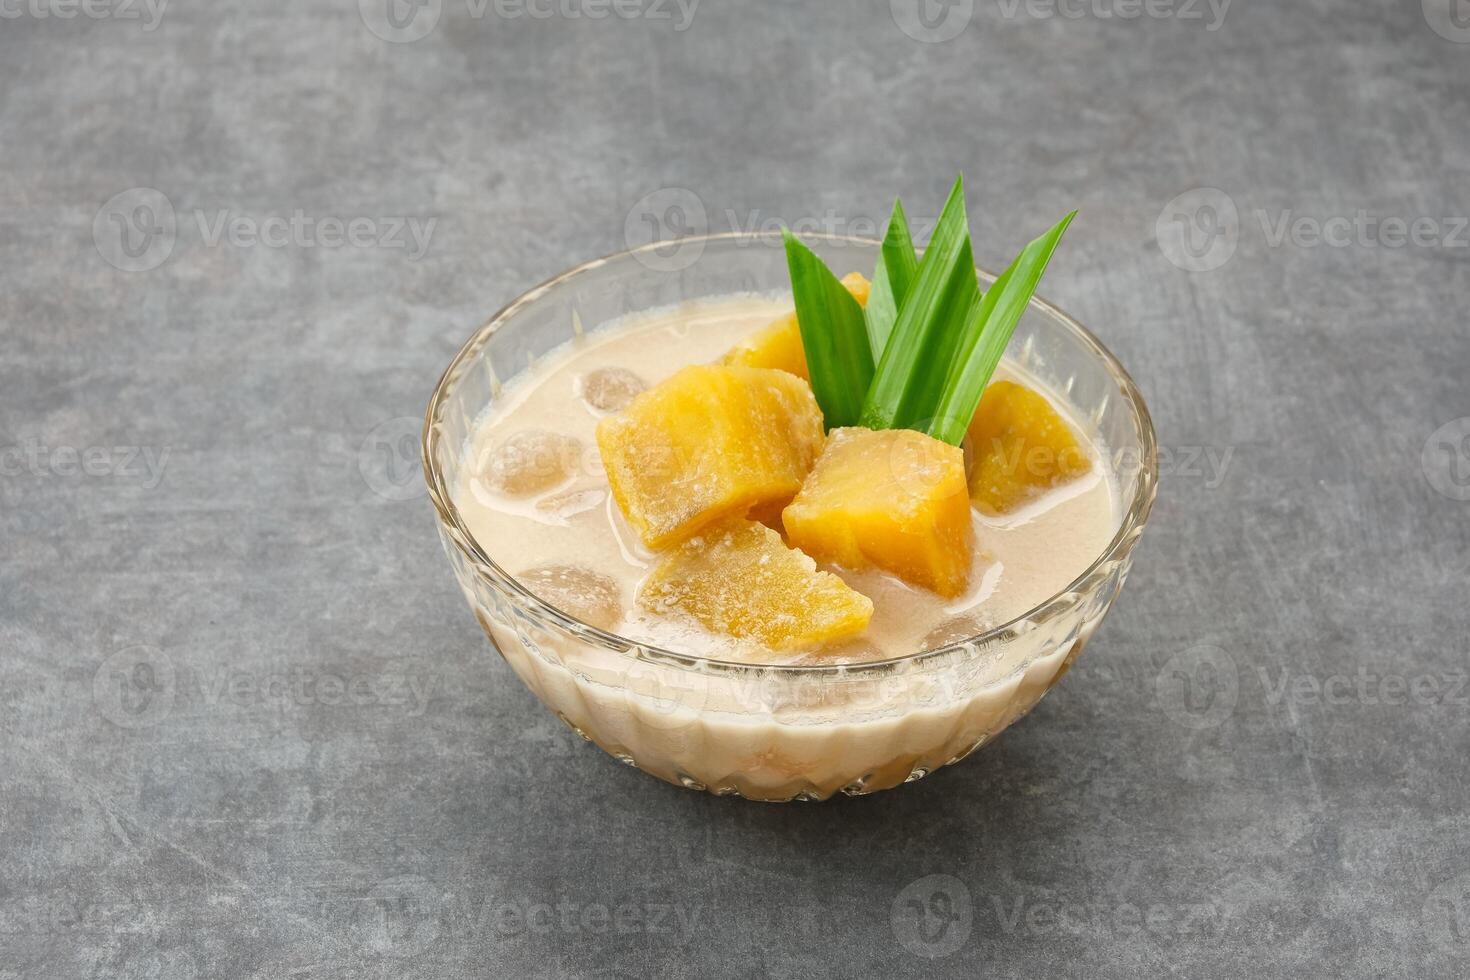 kolak ubi, Indonesisch traditioneel nagerecht, gemaakt van zoet aardappel, kokosnoot melk, suiker en pandanus bladeren. foto